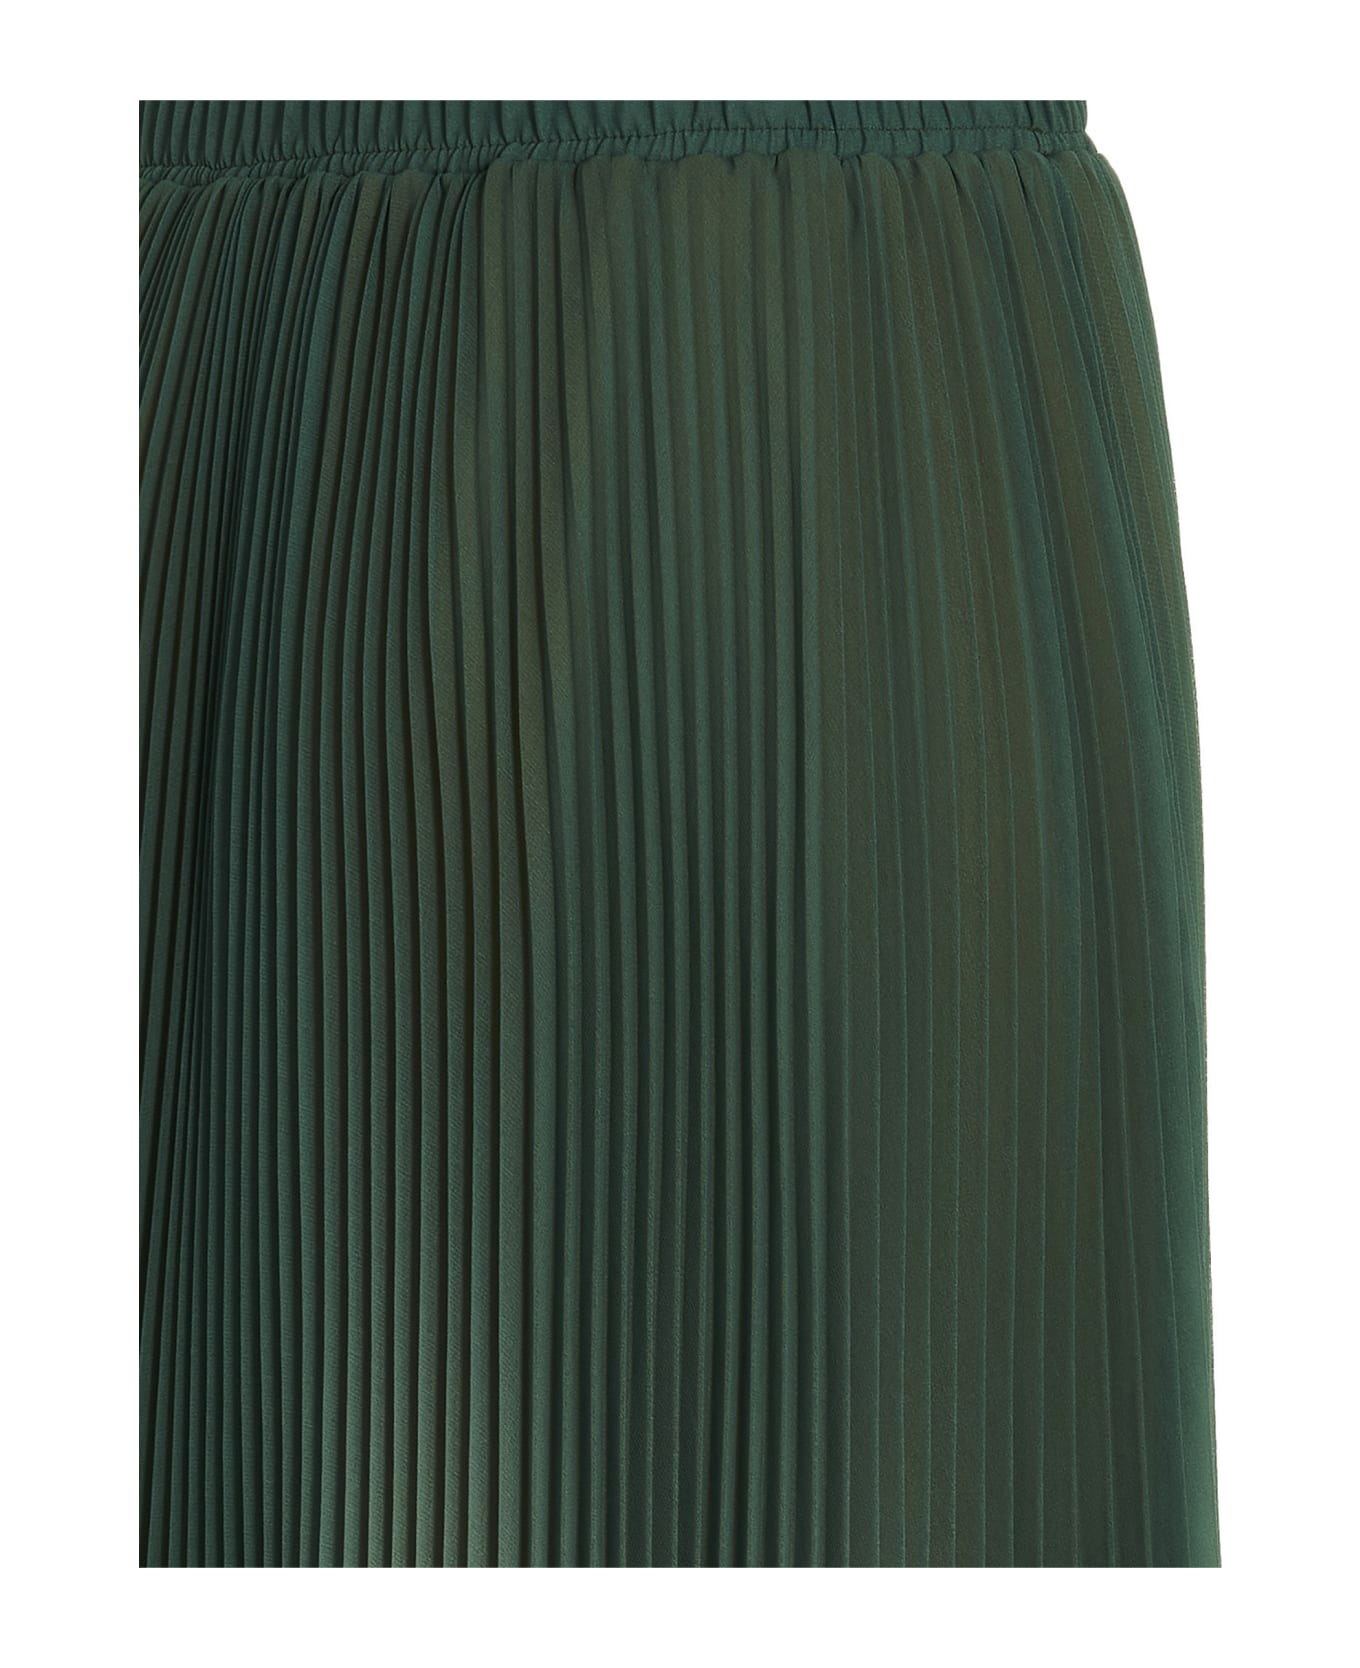 Ermanno Scervino Degradè Pleated Skirt - Green